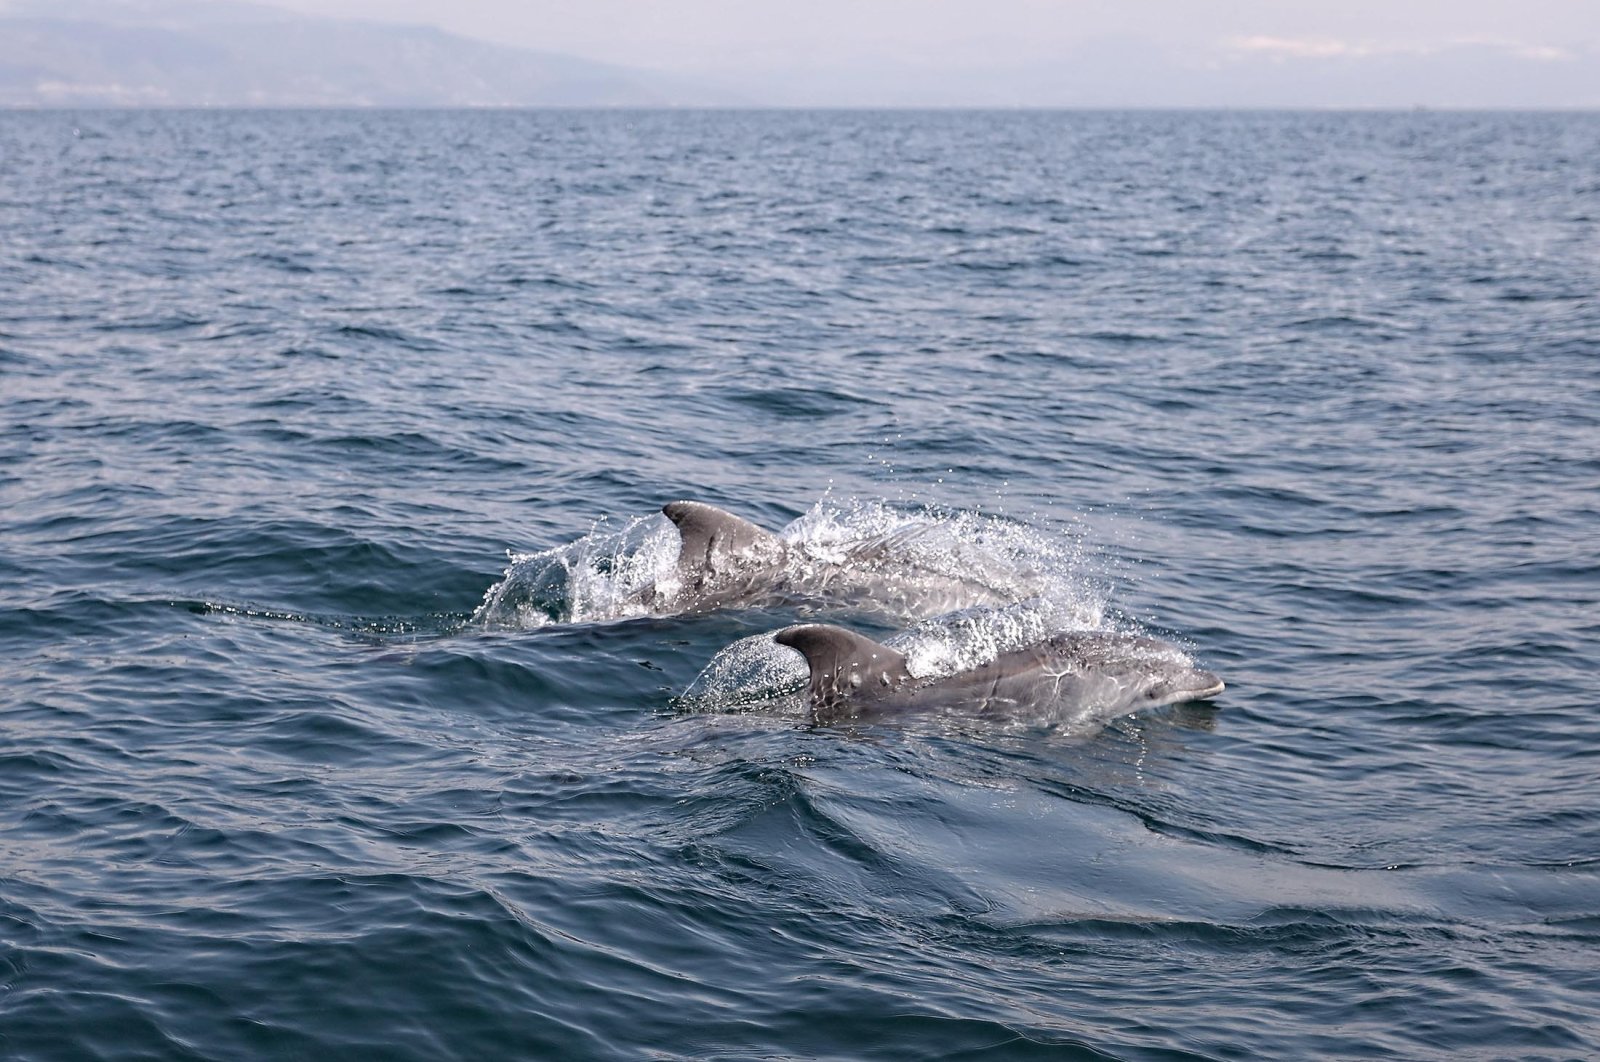 Kematian massal lumba-lumba di Turki diduga karena jaring ikan